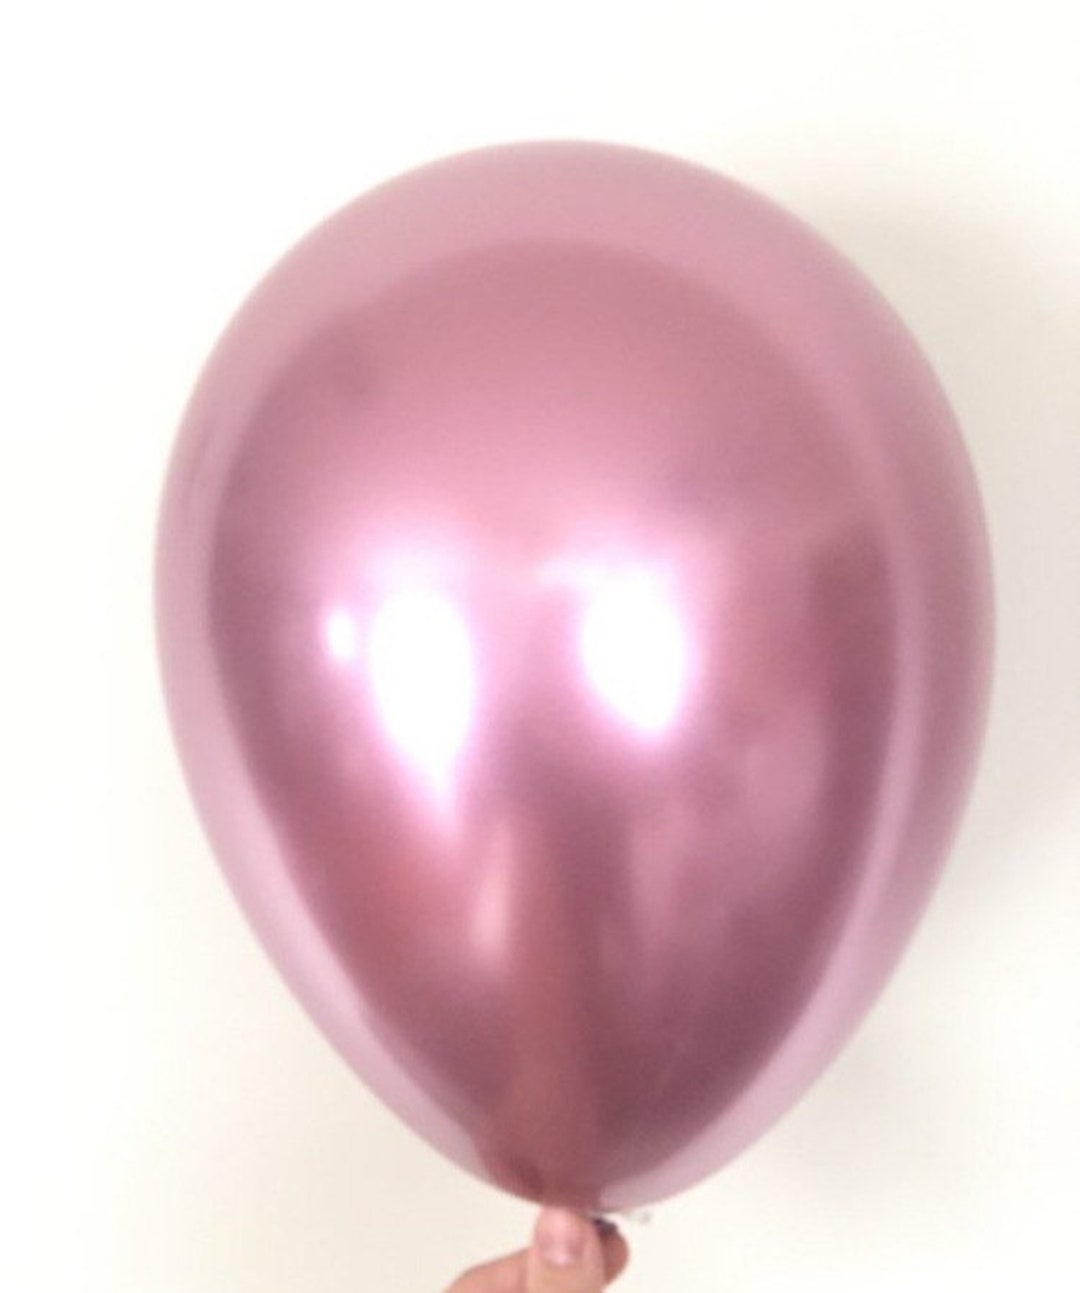 Ballon Chrome Violet - A la couleur - Ballonrama Ballonrama